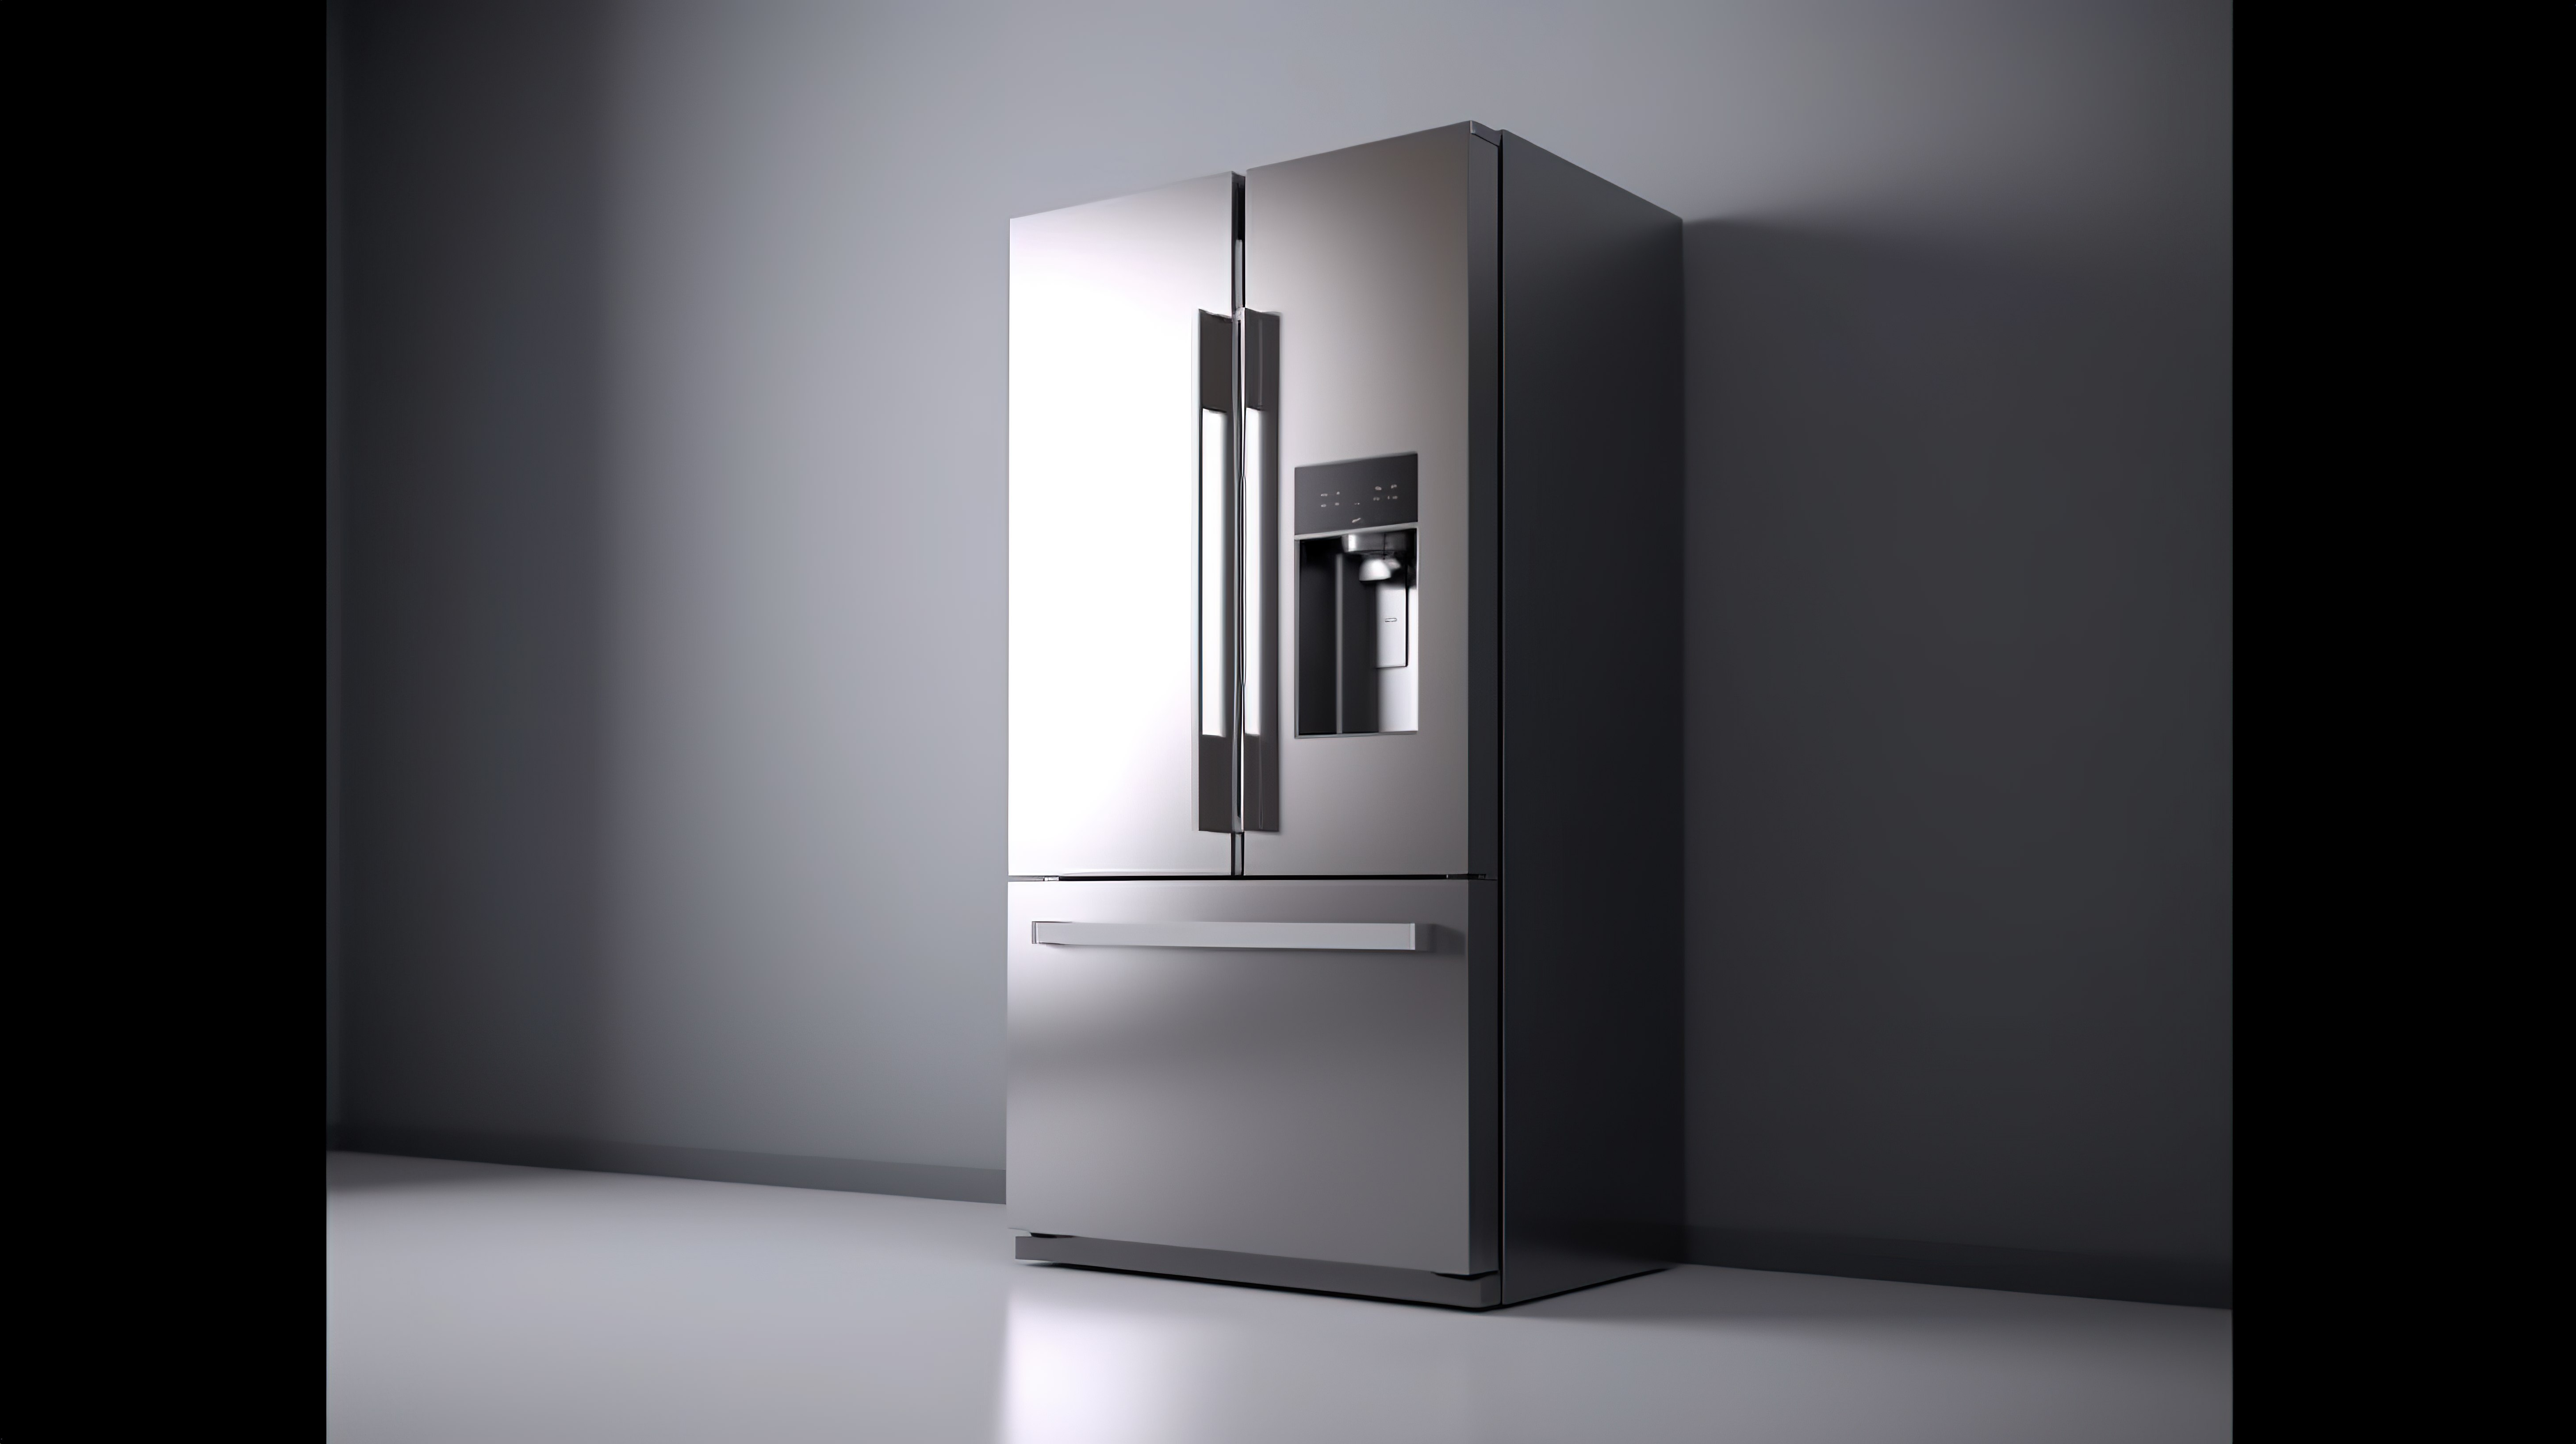 时尚的不锈钢冰箱冰柜组合展示在复杂的灰色背景 3D 渲染上，满足您的设计模型需求图片